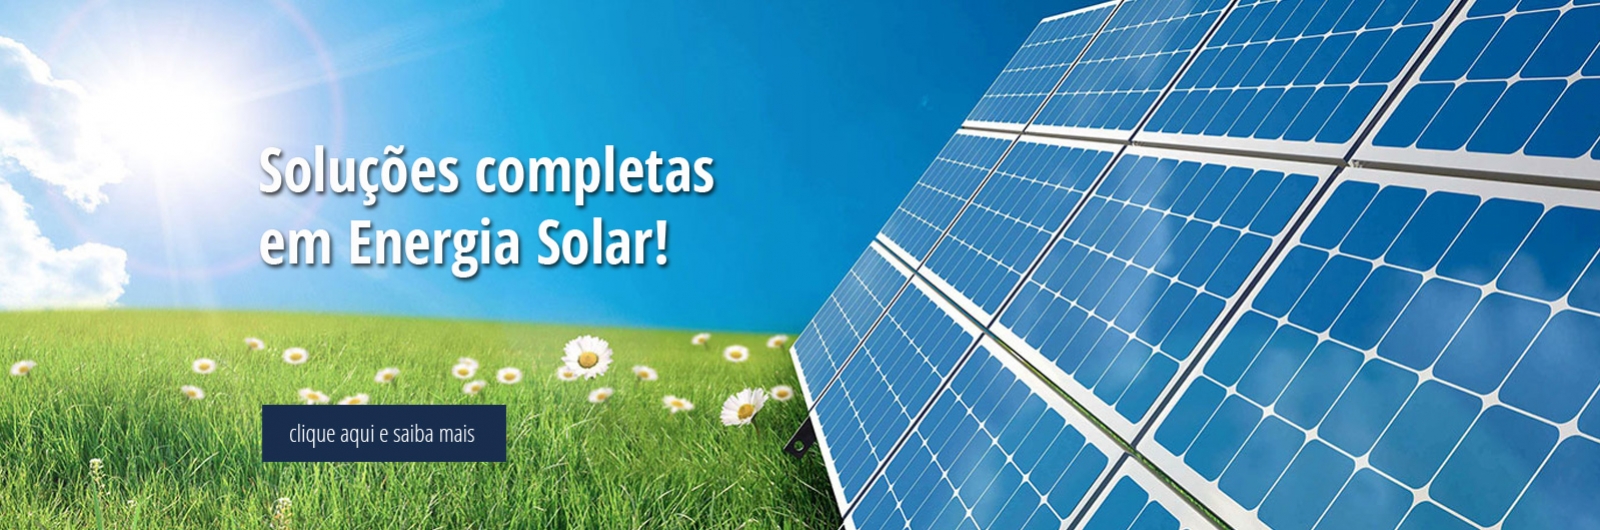 energia solar, energia fotovoltaica, solar fotovoltaico, sistema fotovoltaico, energias solar, fotovoltaico, sistema, gerador solar, gerador de energia solar, gerador fotovoltaico, sistemas de energia solar, 